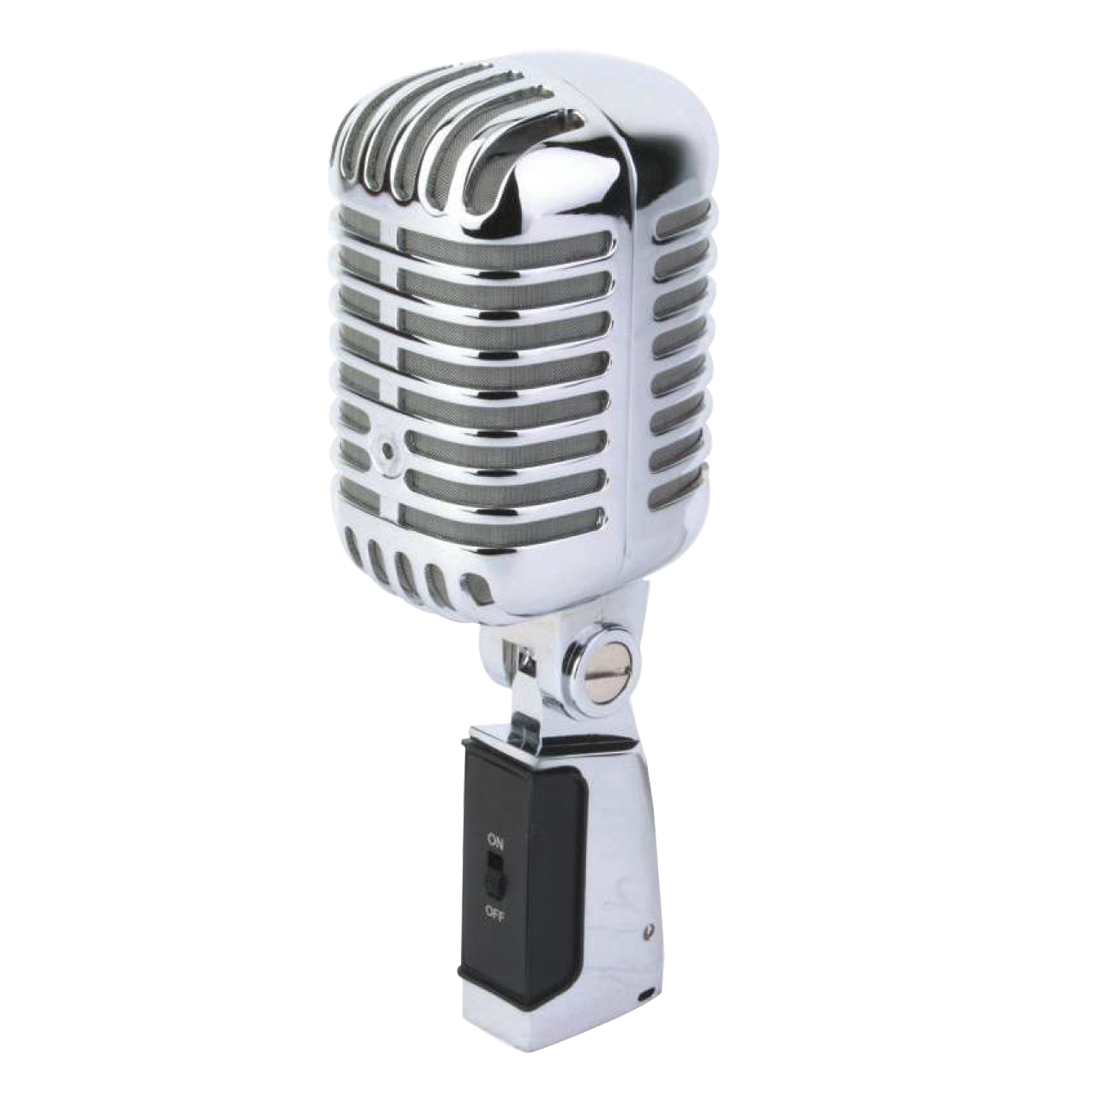 CSM006 Professional Condenser Studio Microphones